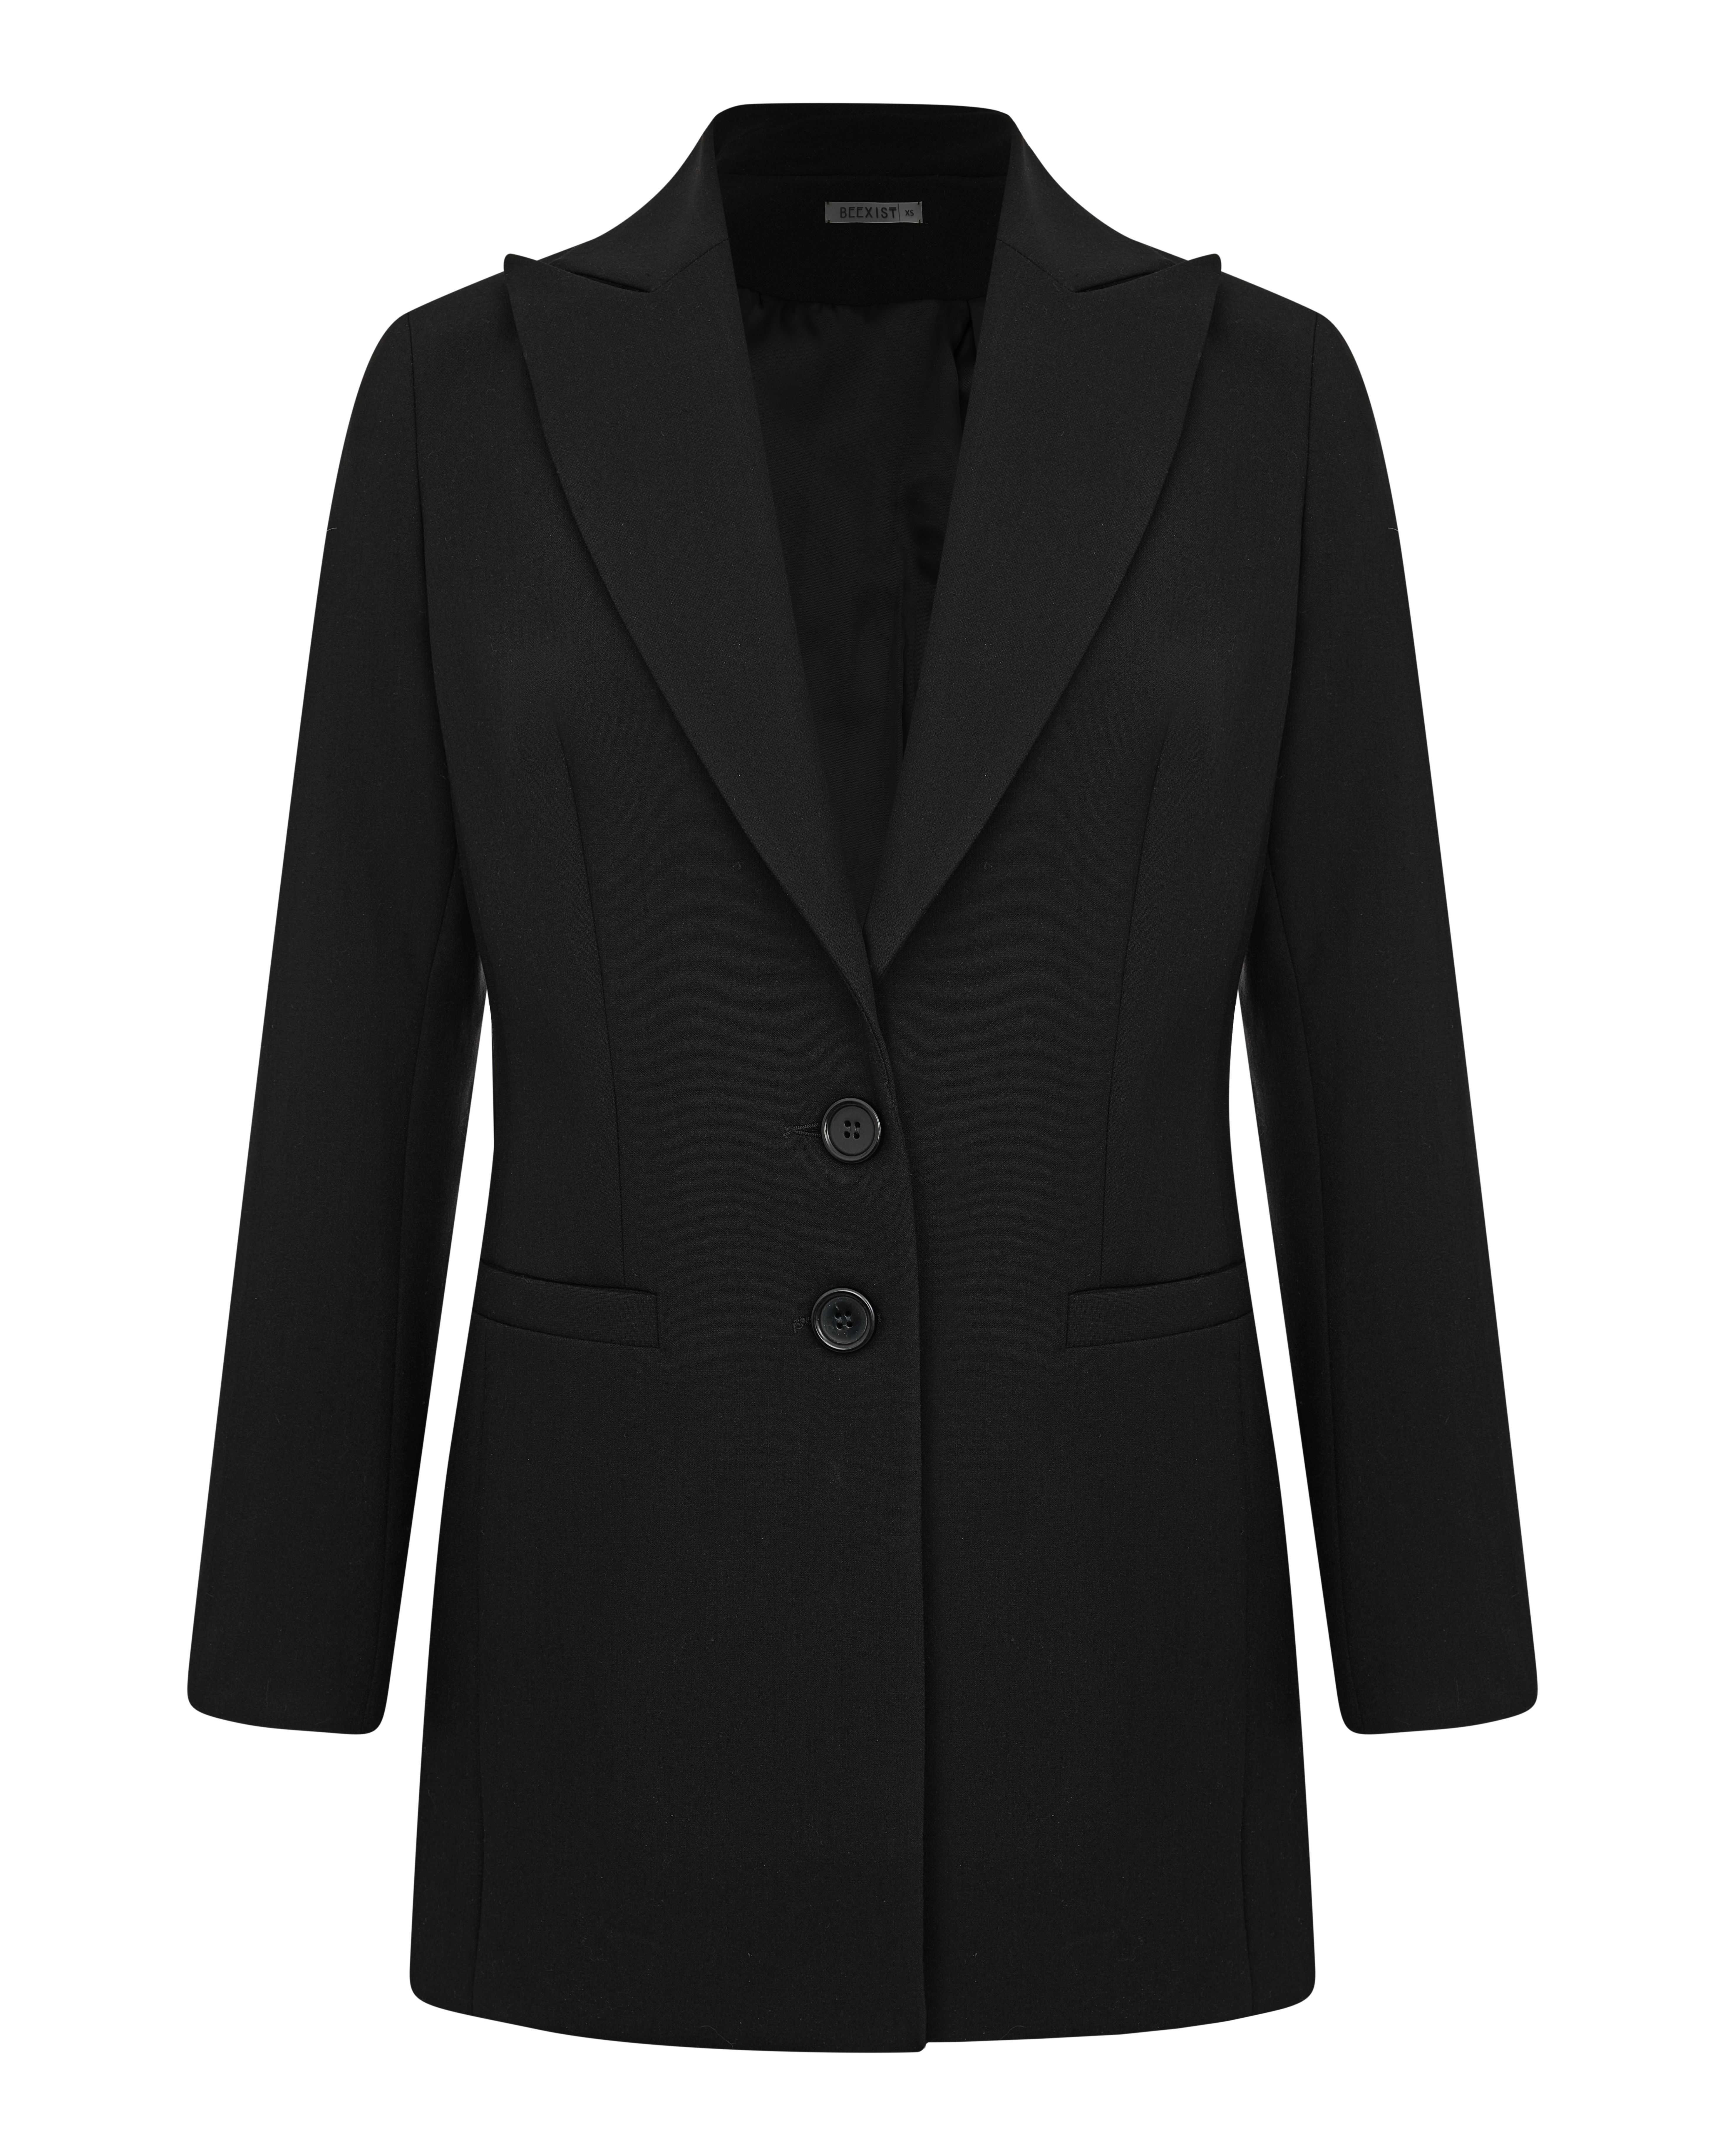 Пиджак классический черный, купить пиджак классический черный 